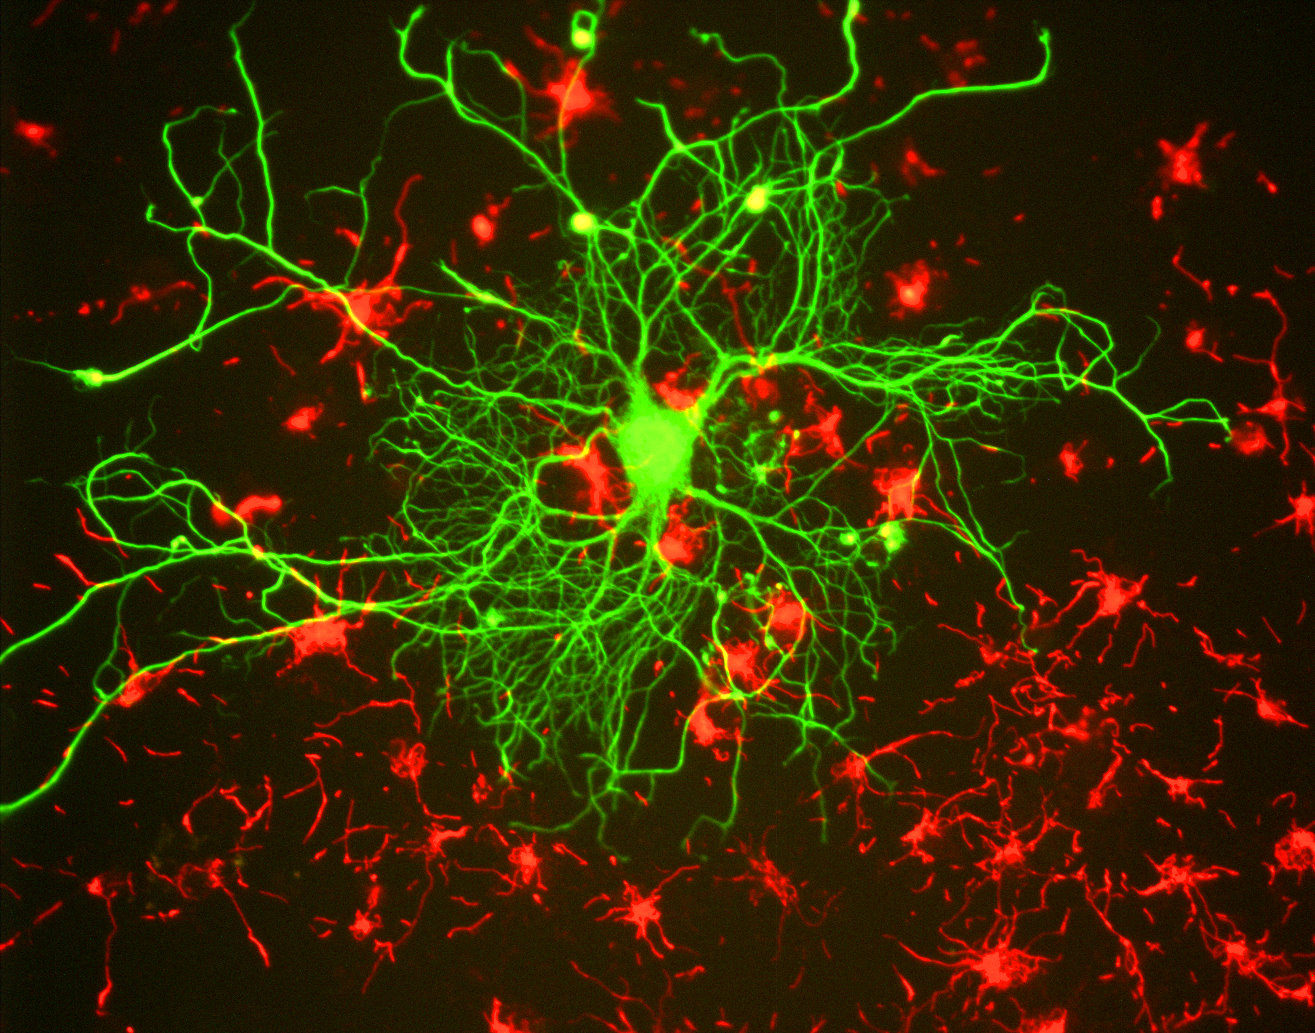 réseau neuronal et liens synaptiques entre les neurones.